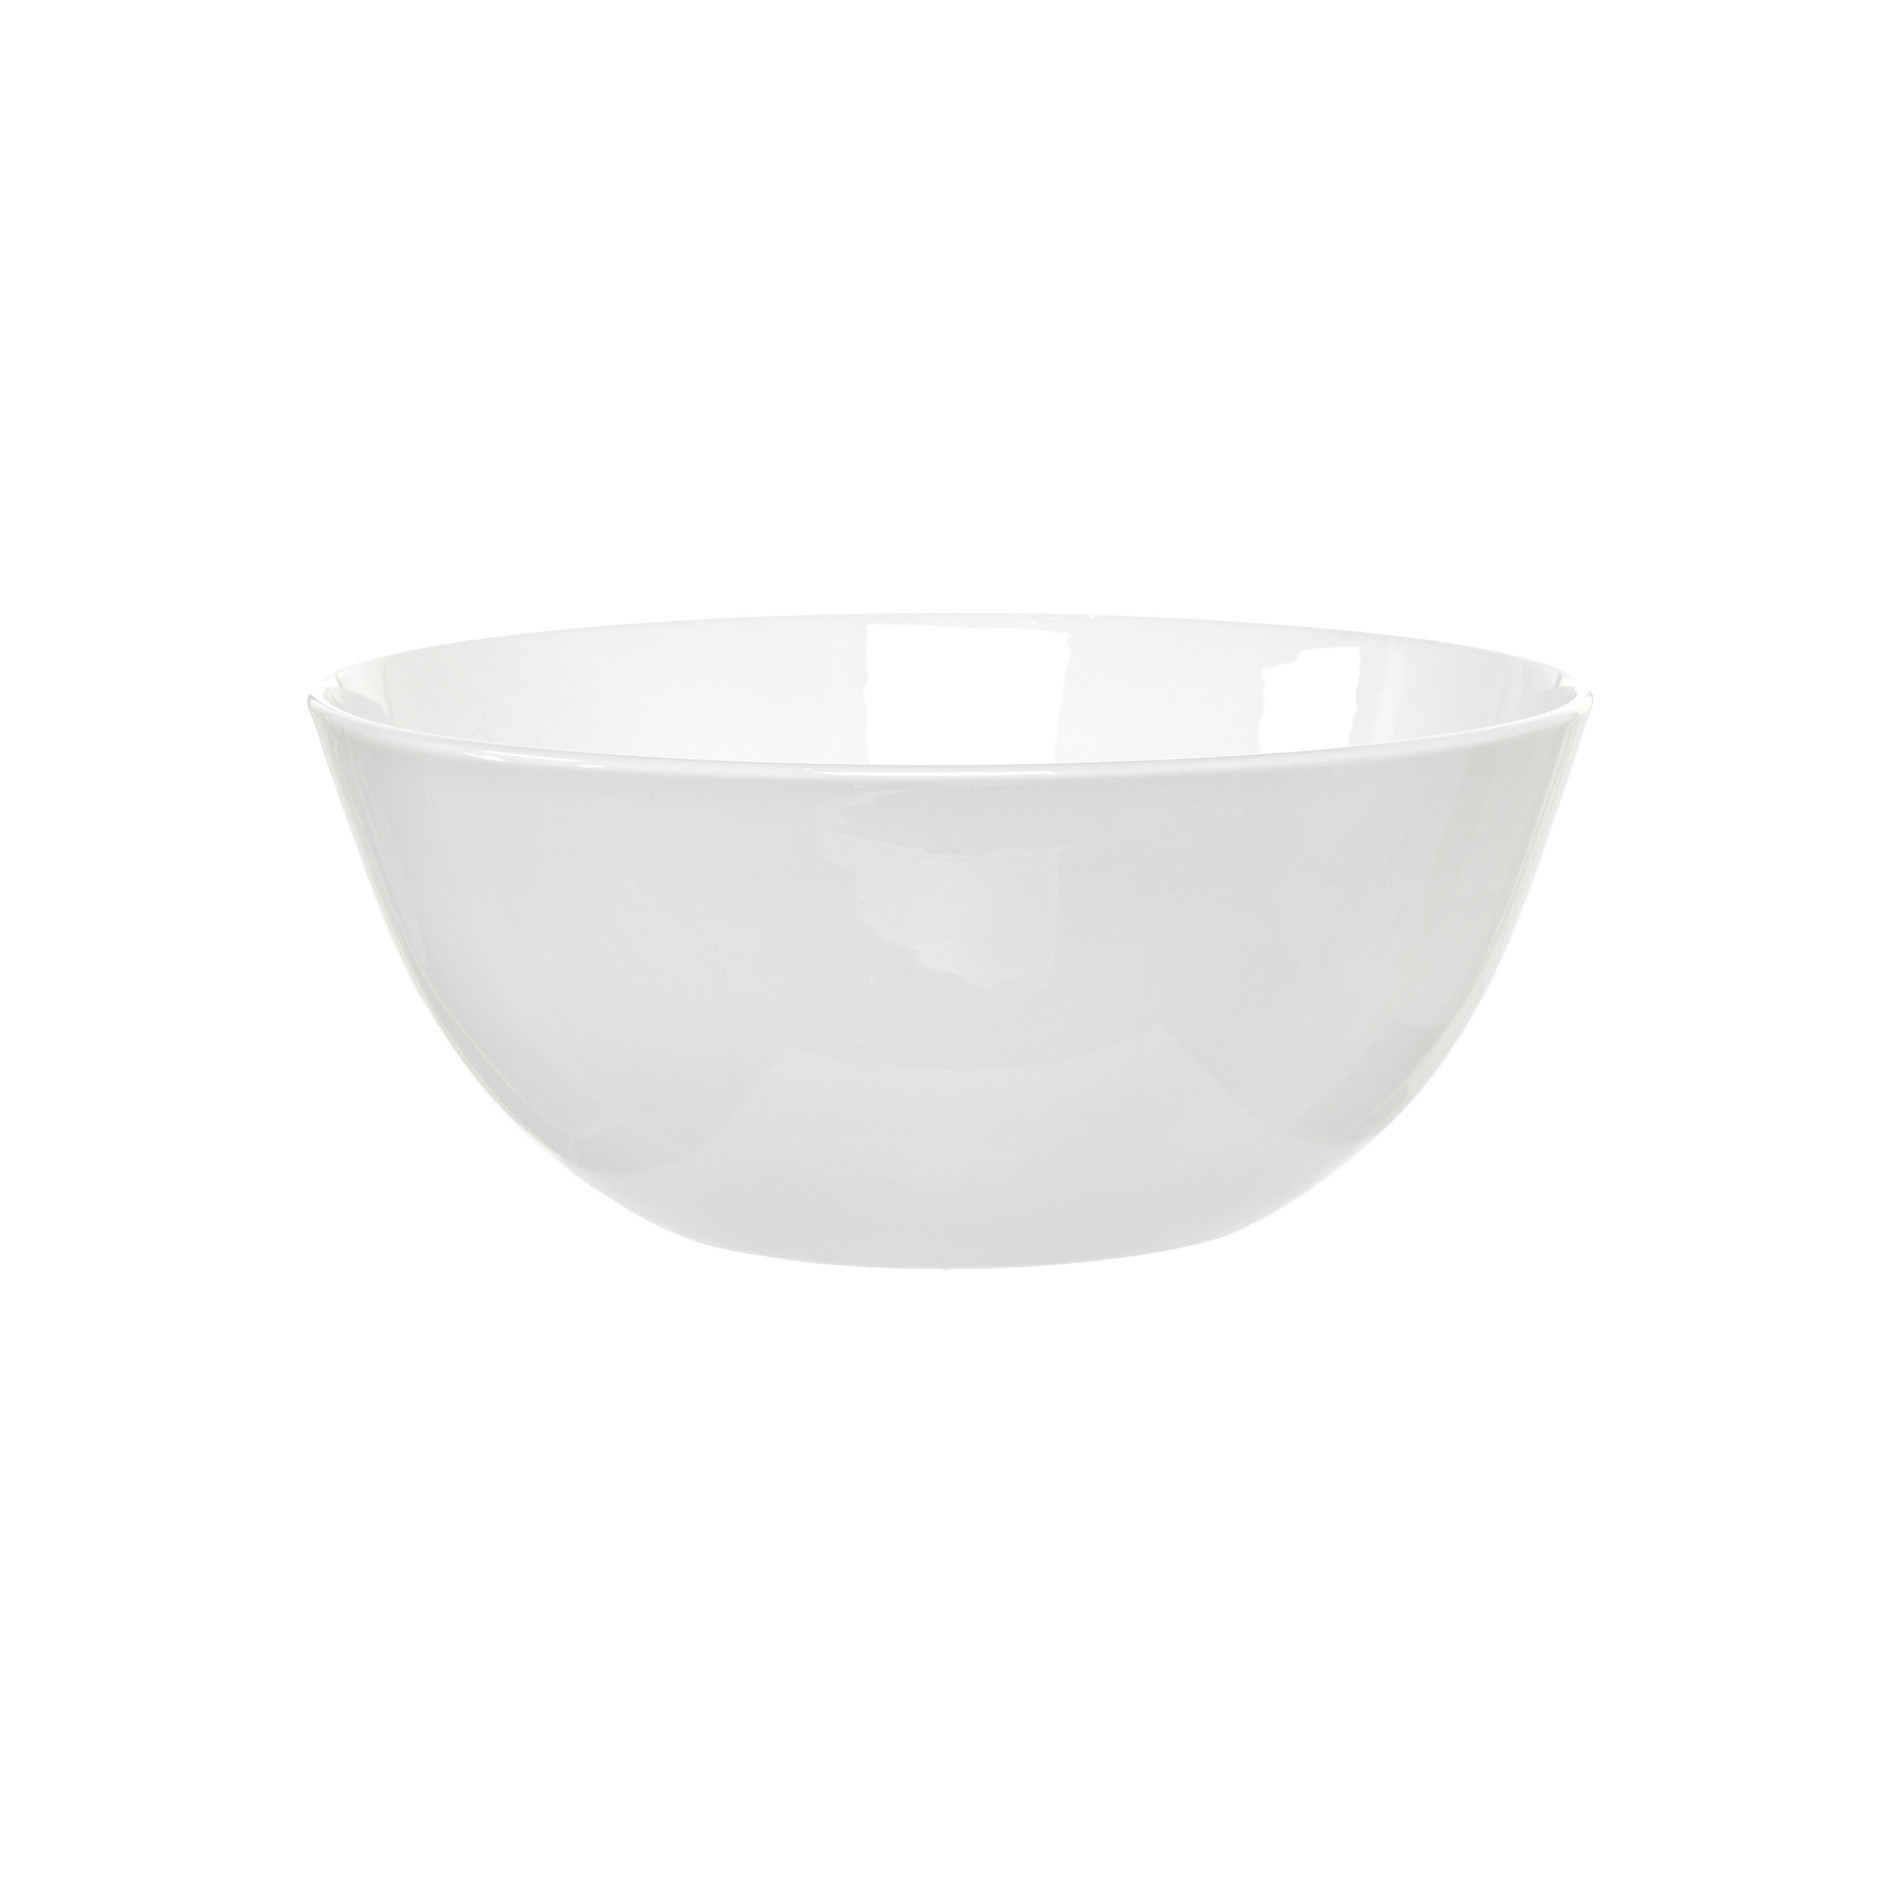 Anna porcelain salad bowl, White, large image number 0